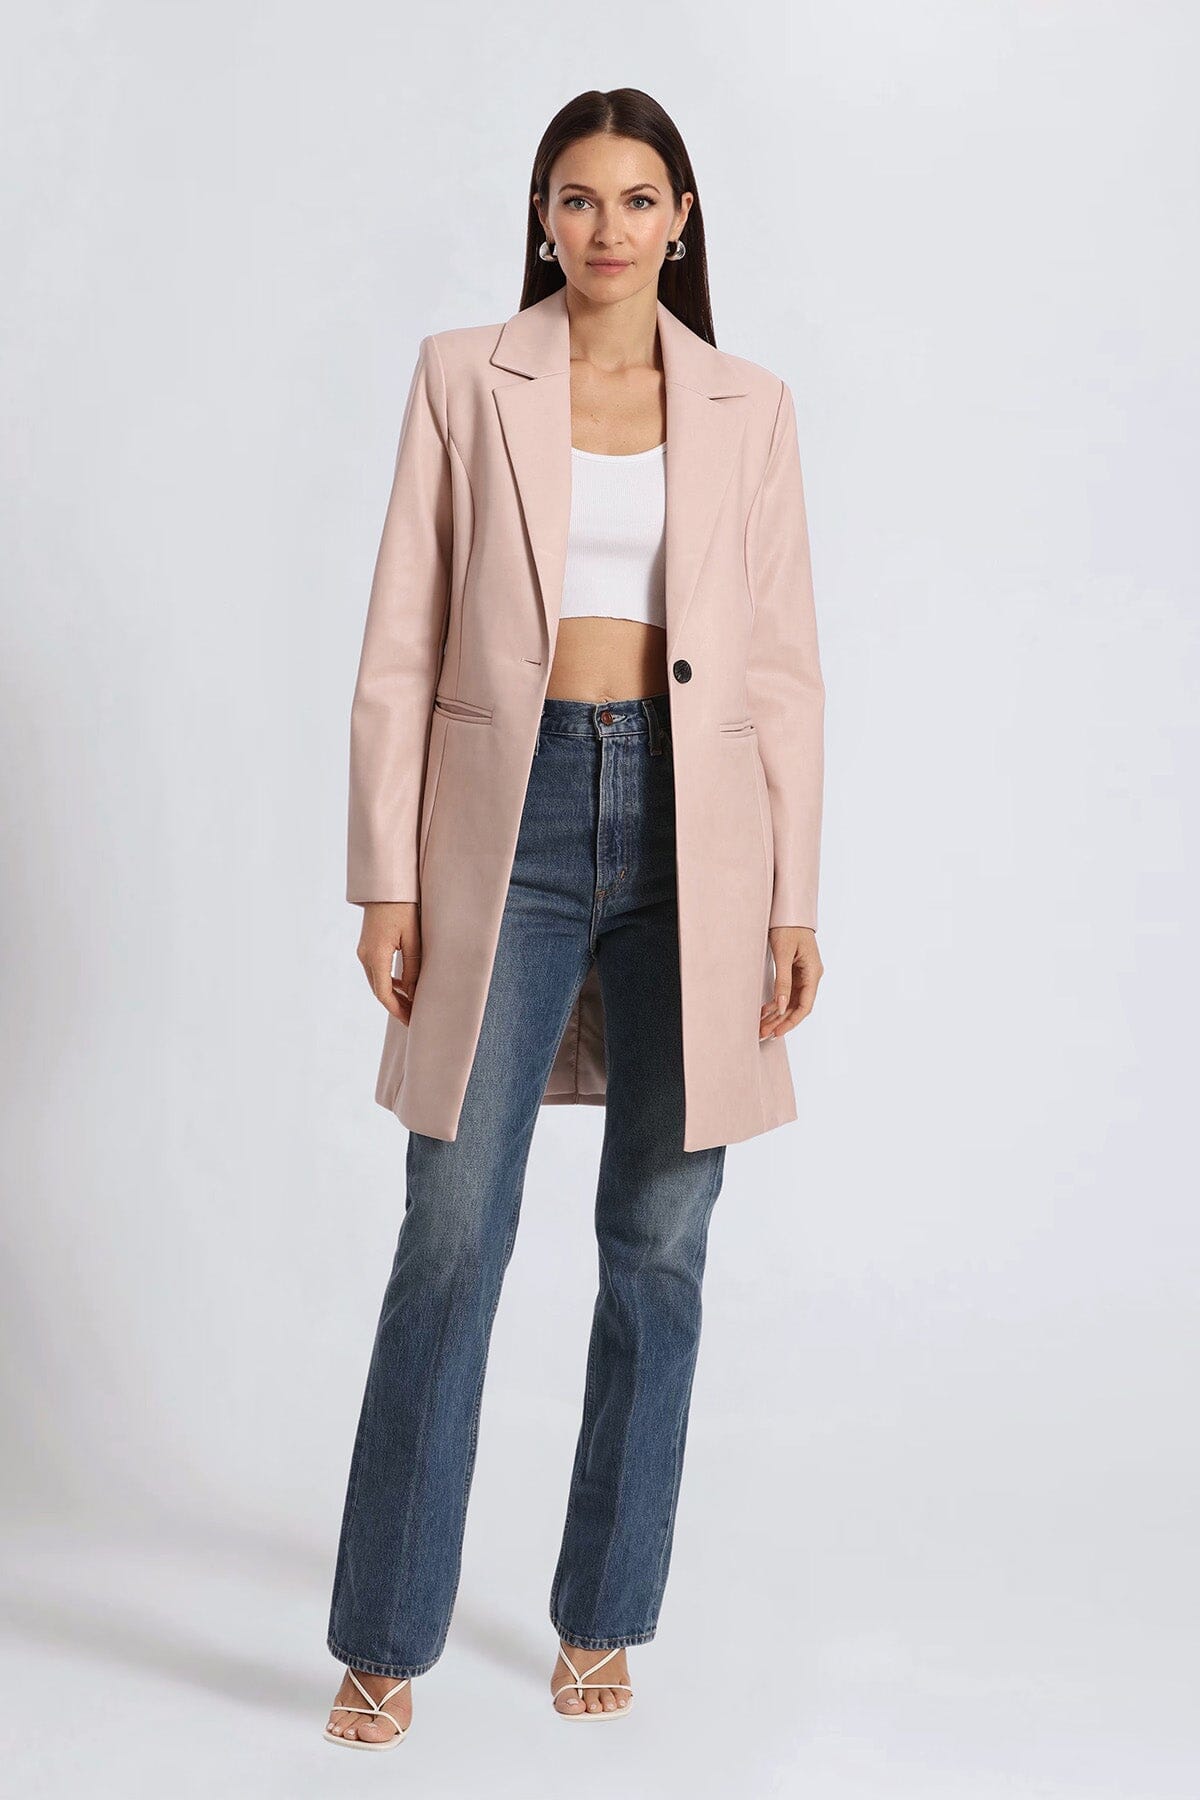 Pale Pink Cute Faux Leather Longline Blazer Jacket - Coats & Jackets Avec Les Filles 